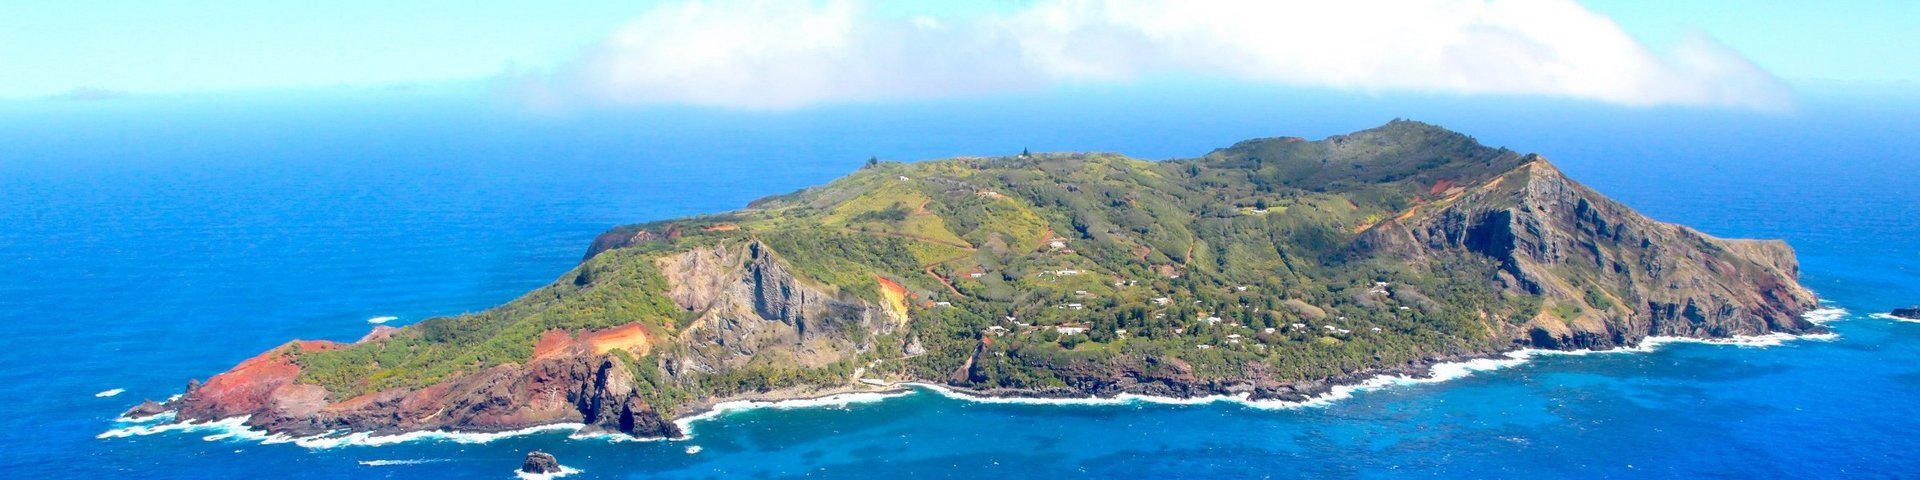 Luftaufnahme der Insel Pitcairn